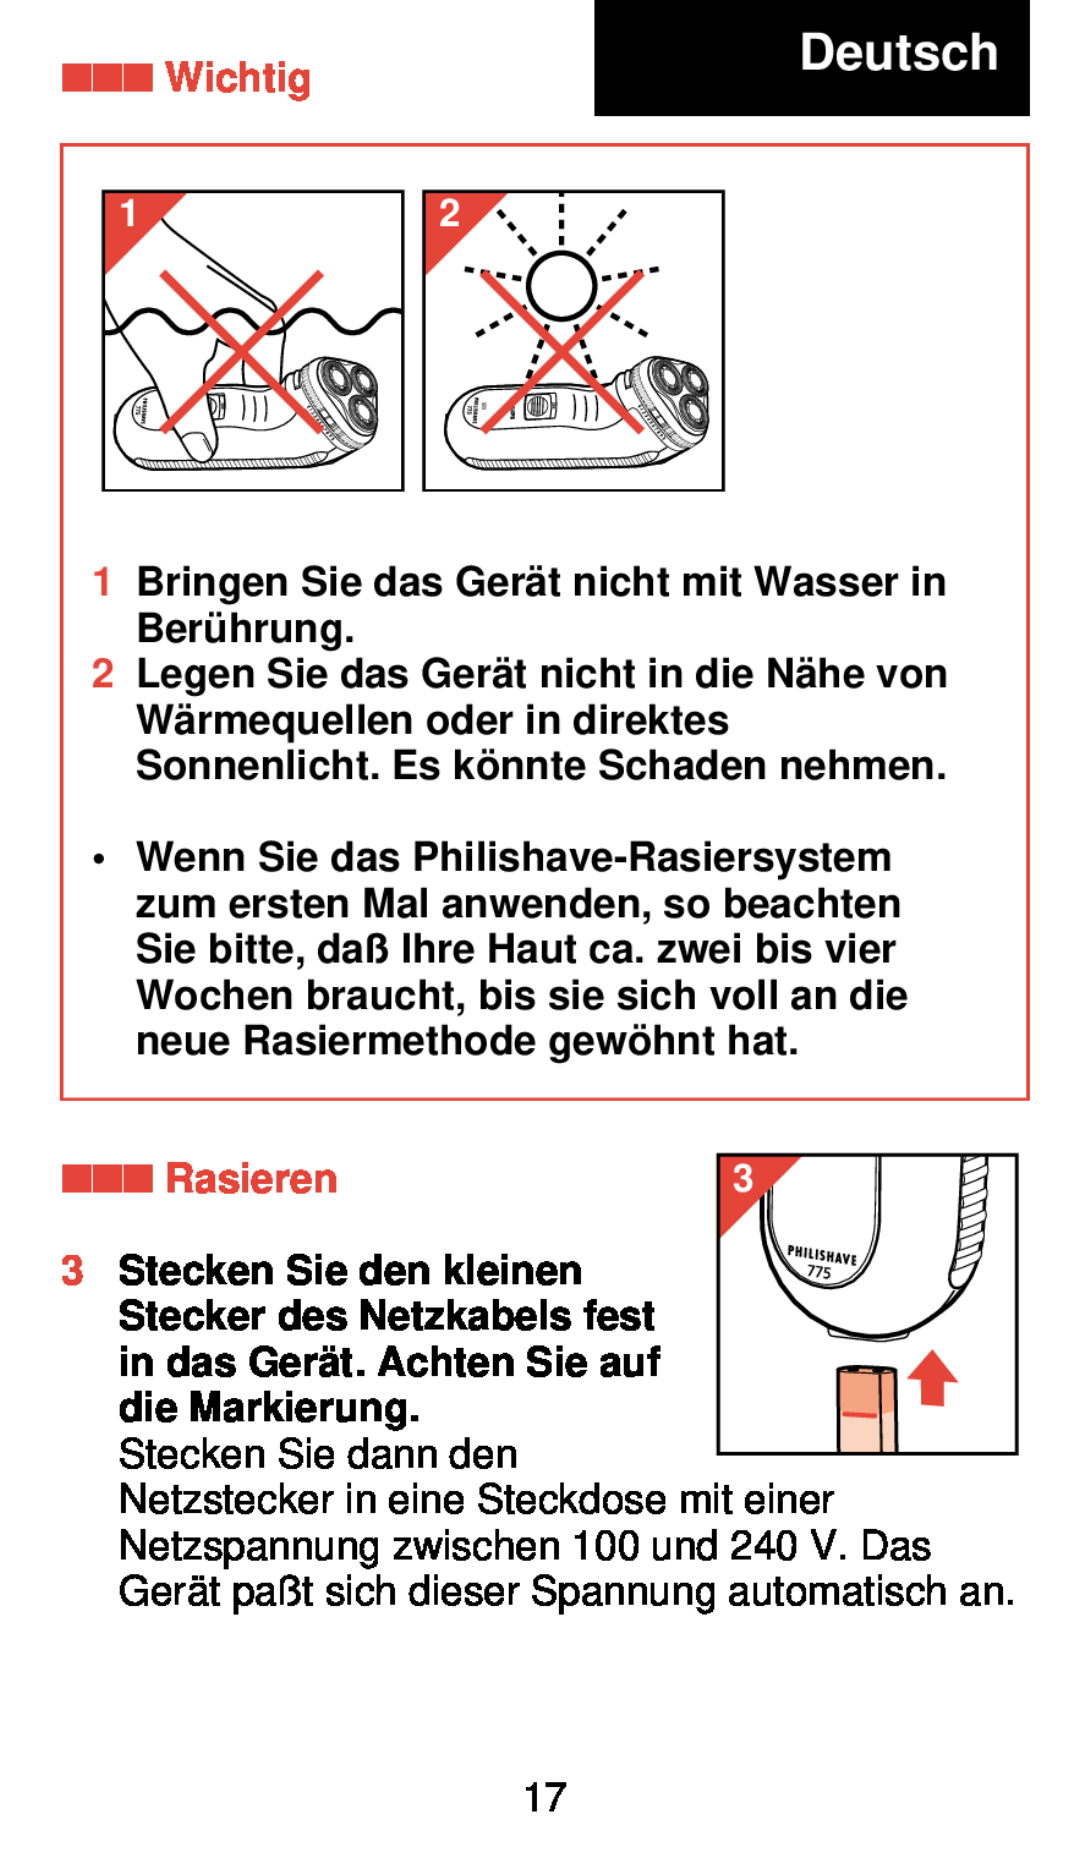 Philips 775 manual Deutsch, Wichtig, Rasieren, Stecken Sie den kleinen, Stecker des Netzkabels fest, die Markierung 